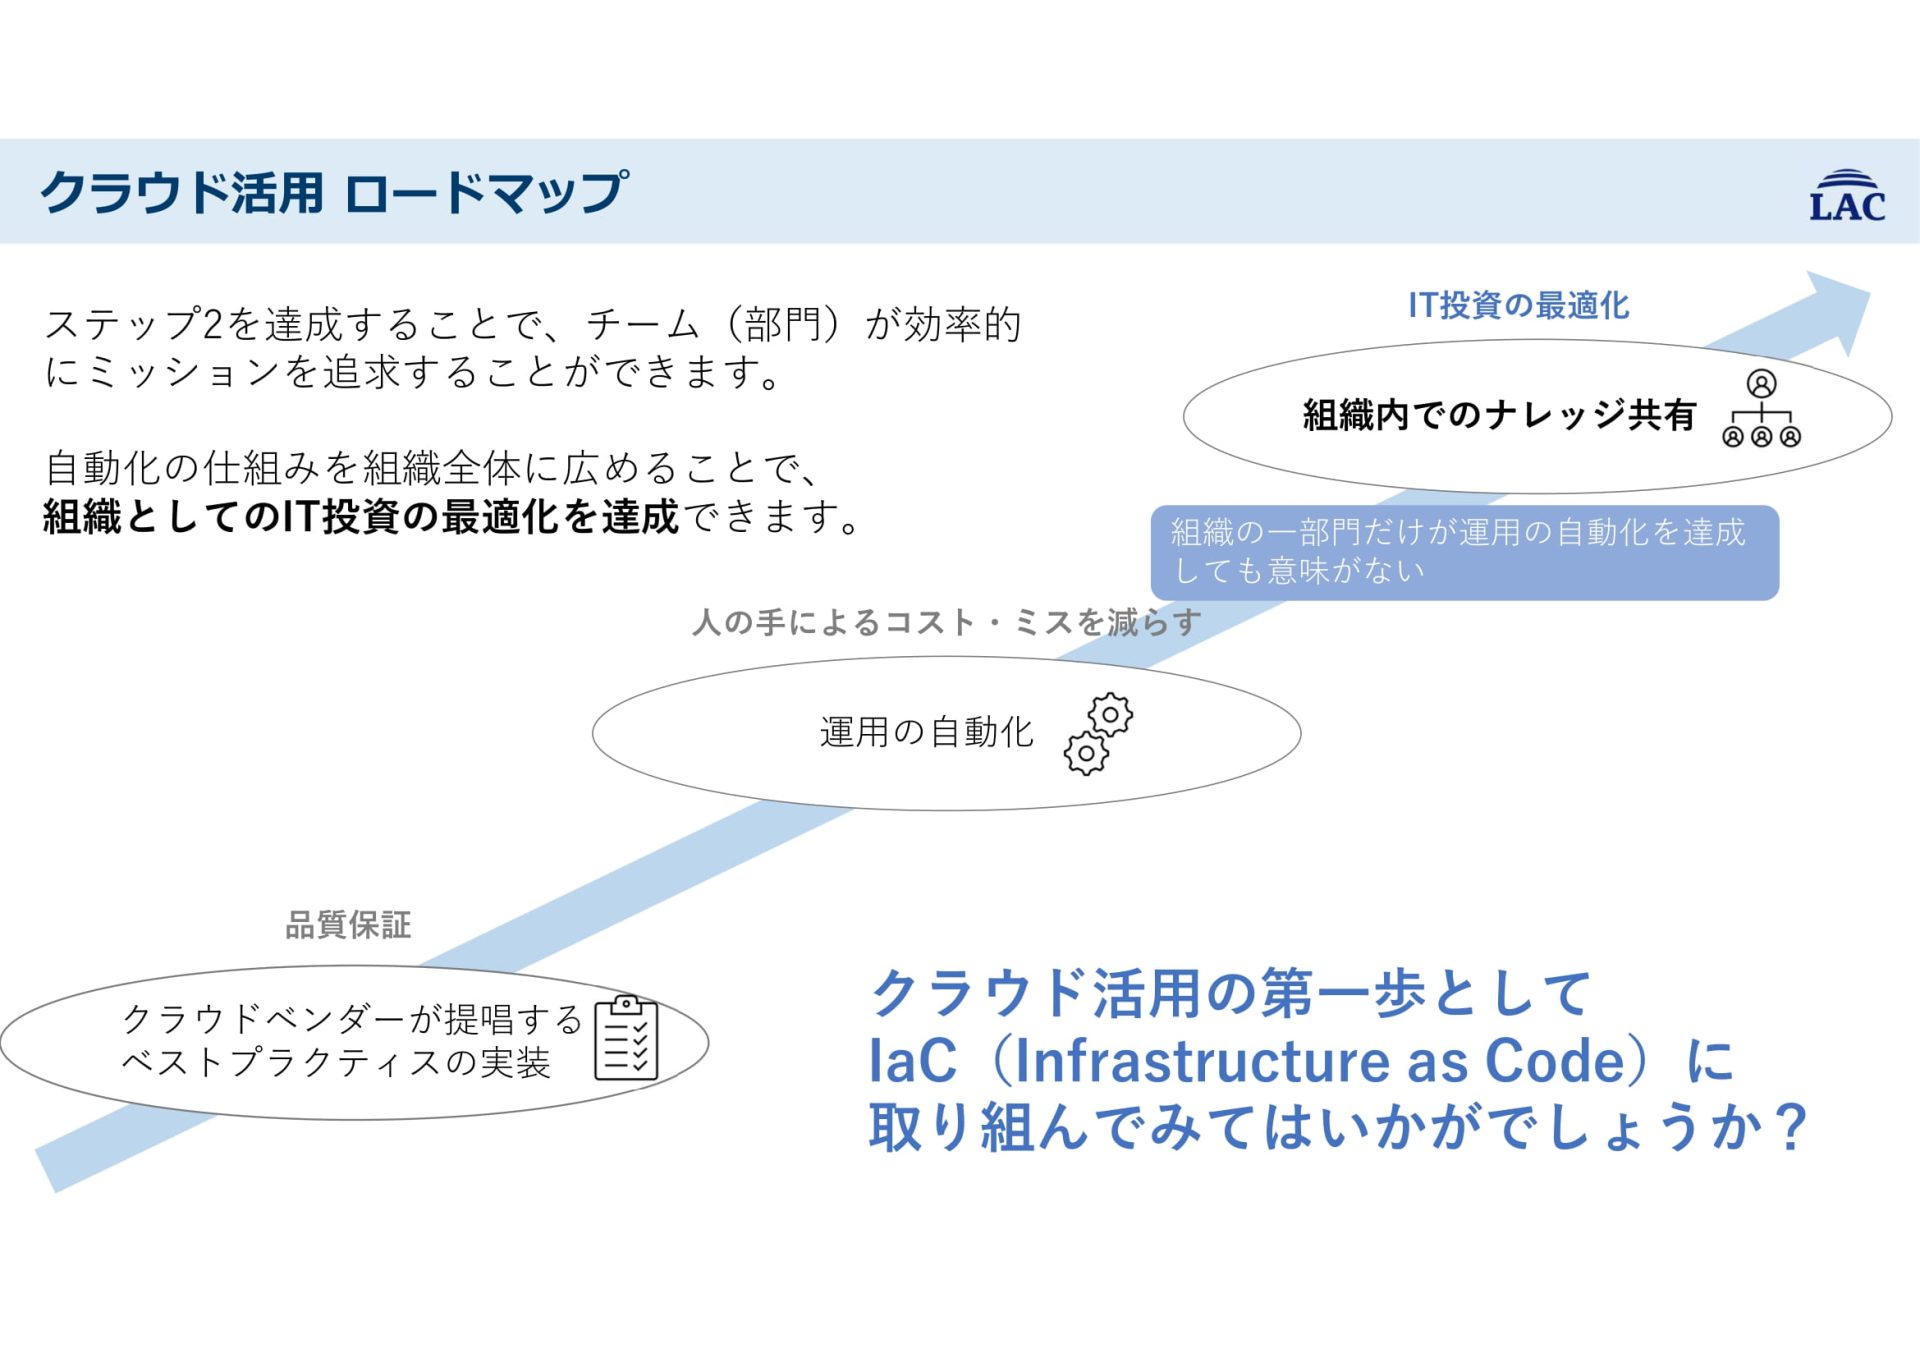 【ツール紹介】無料オープンソース「 IaC (Infrastructure as Code) ツール 」まとめ3選